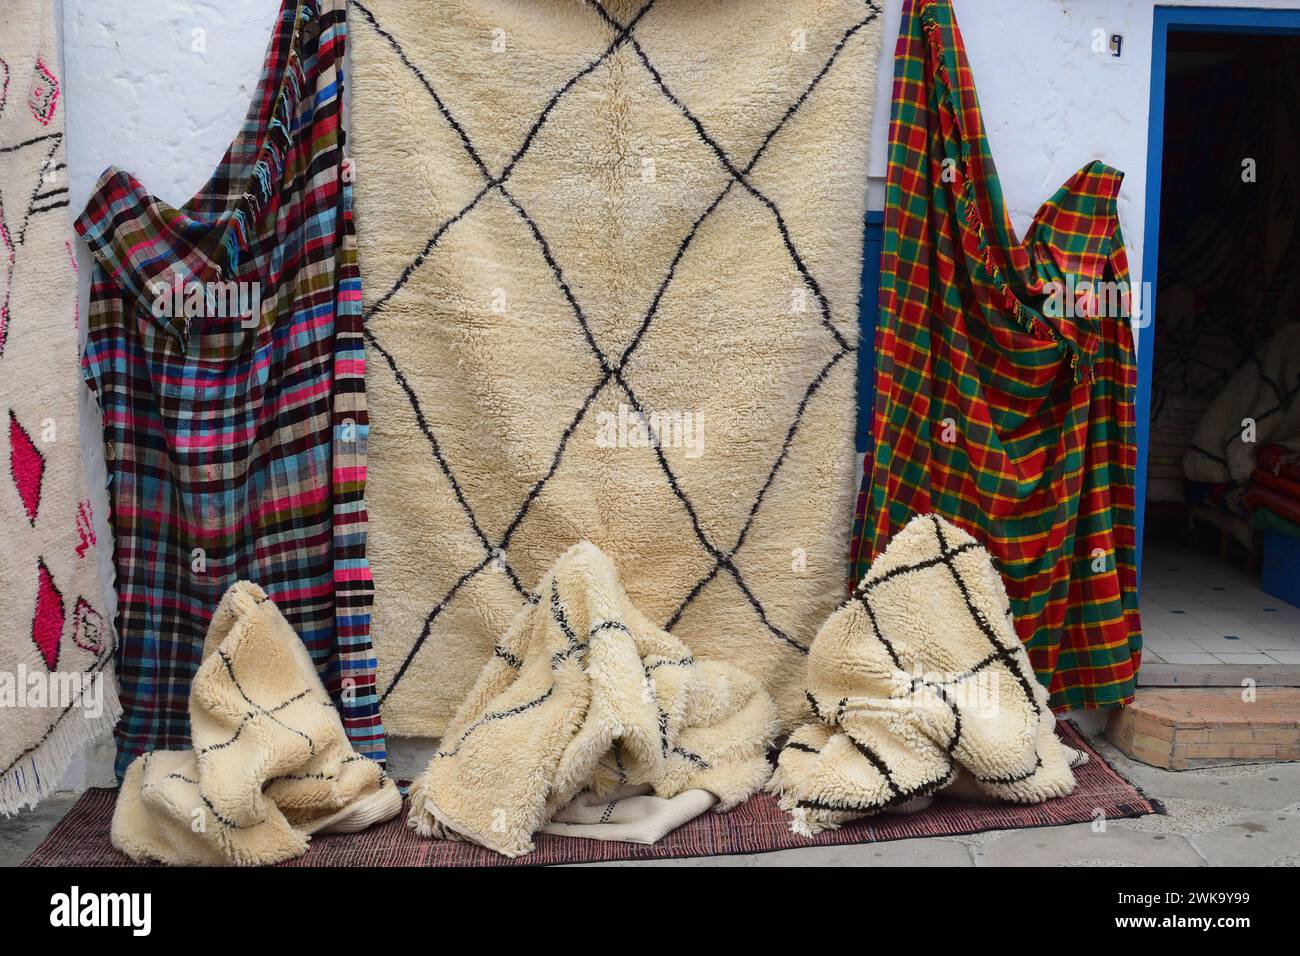 Coperte colorate e tradizionali in lana marocchina esposte per la vendita all'aperto. Foto Stock